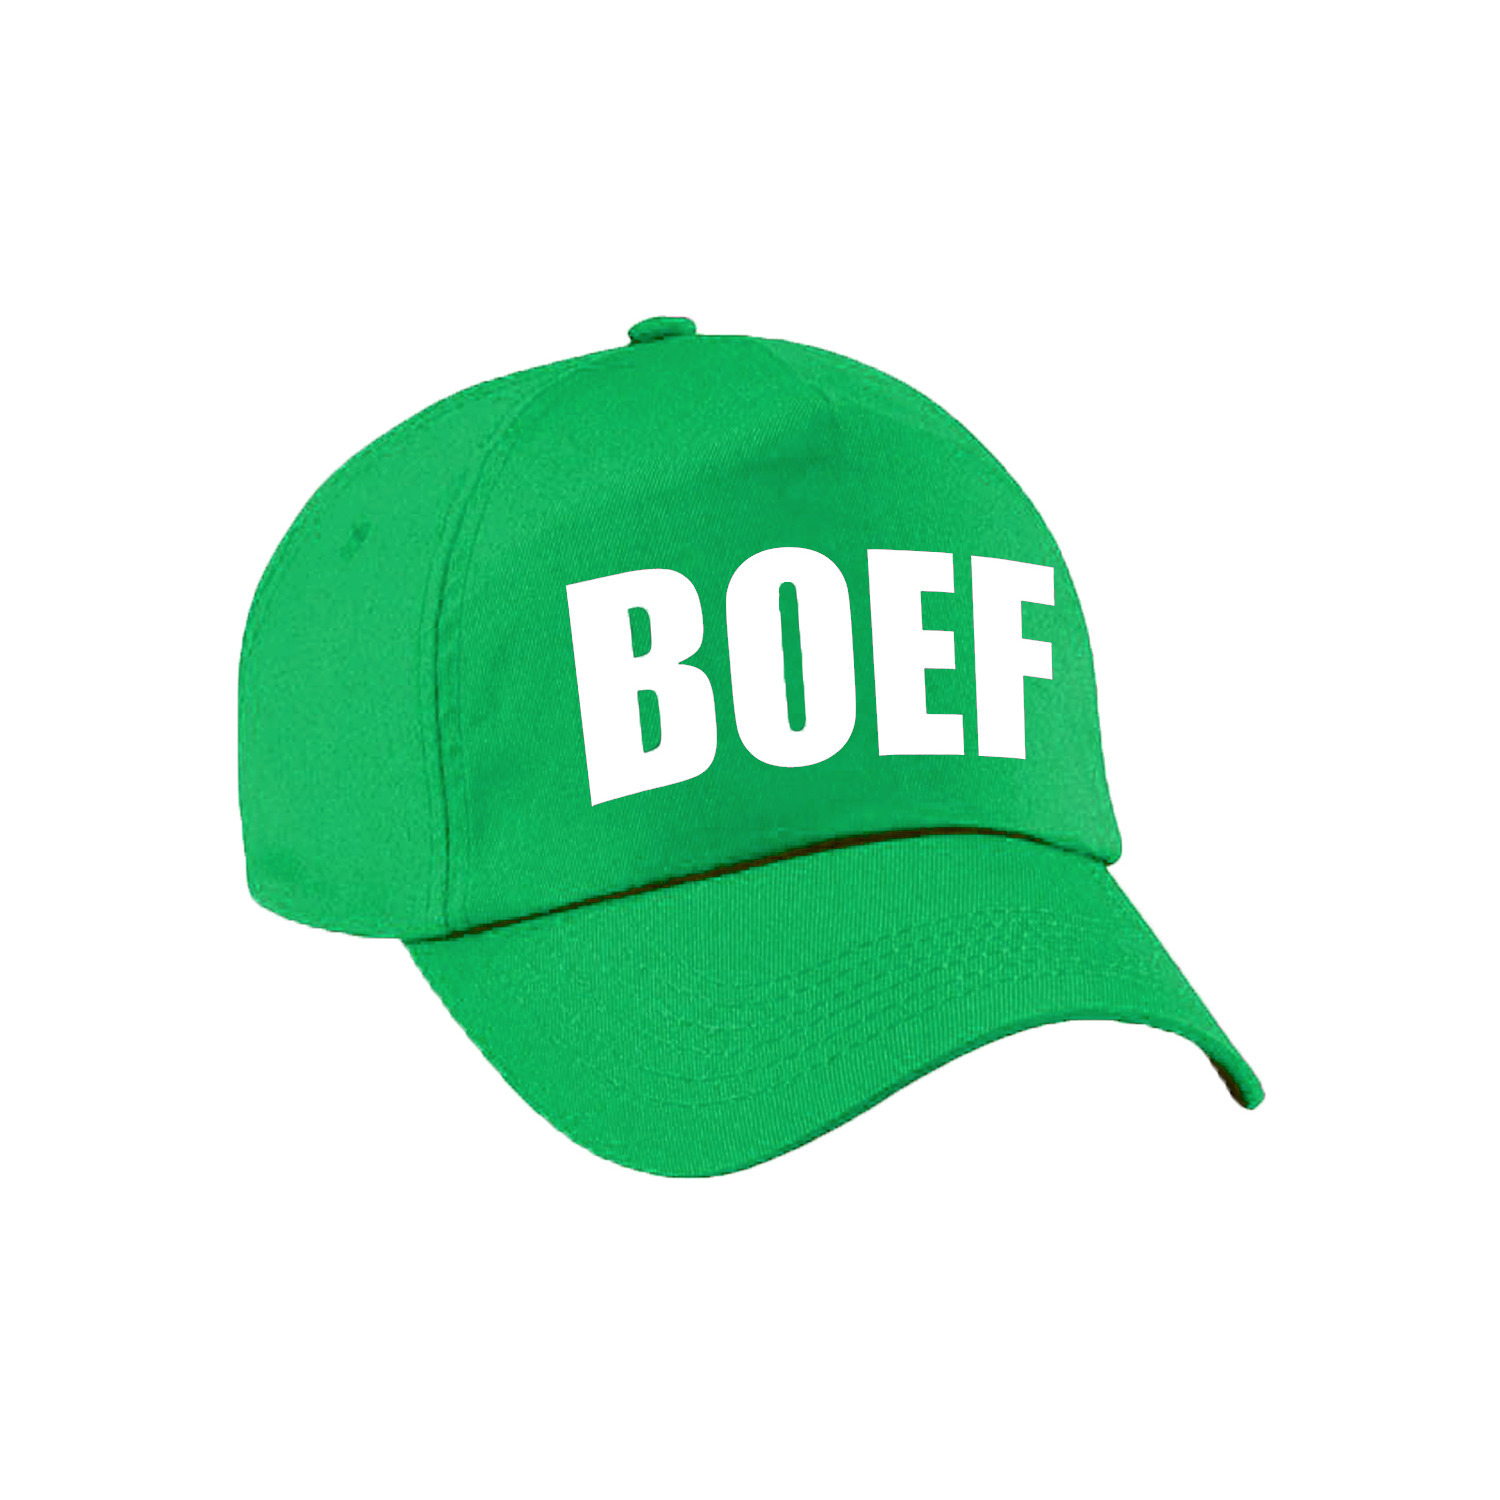 Groene Boef verkleed pet - cap voor kinderen